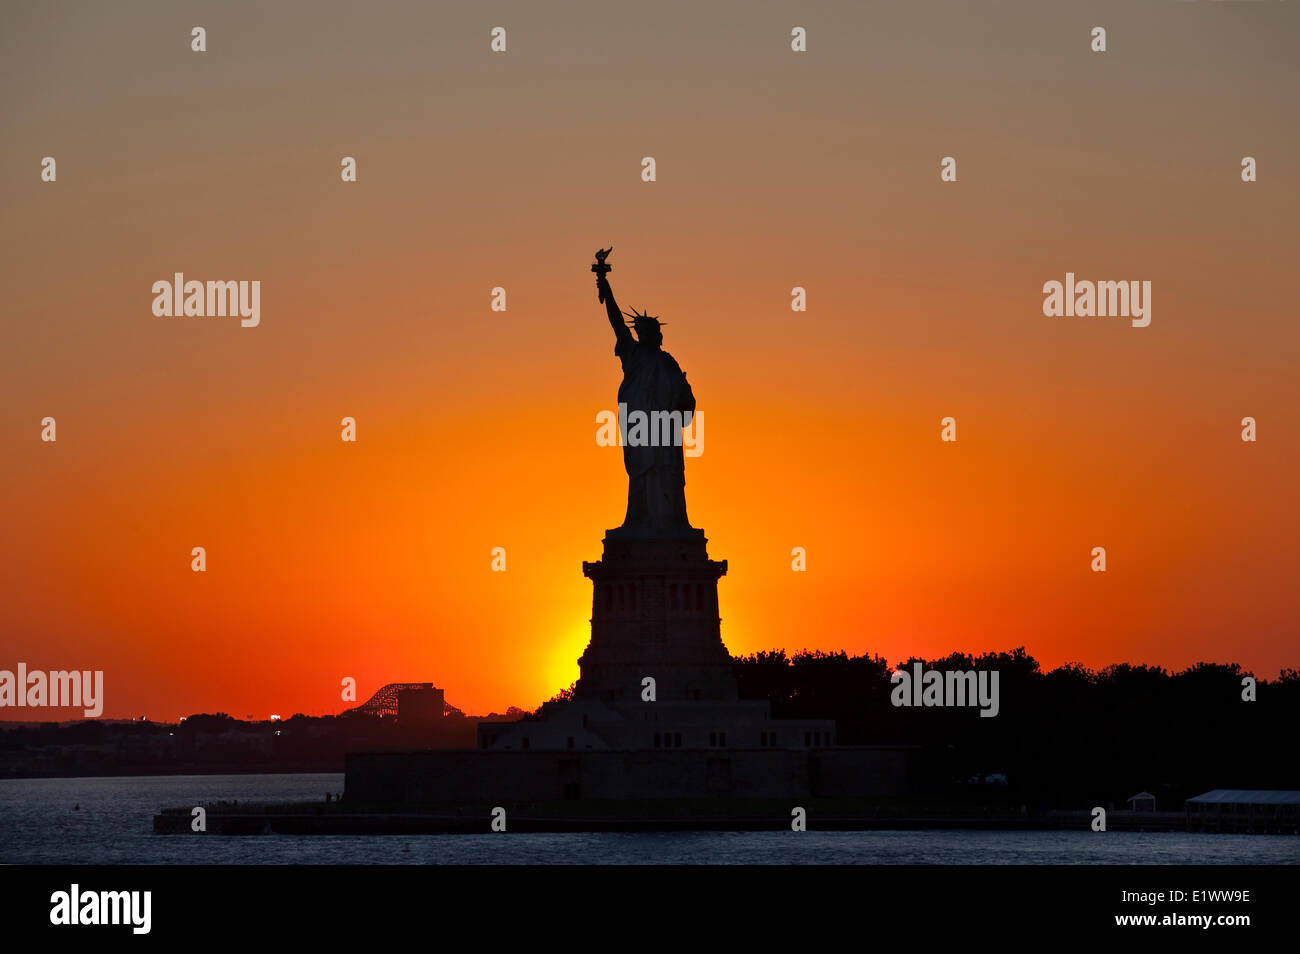 Siluetas de la Estatua de la libertad fotografiado contra la puesta de sol. Liberty Island, Nueva York, EE.UU. Foto de stock